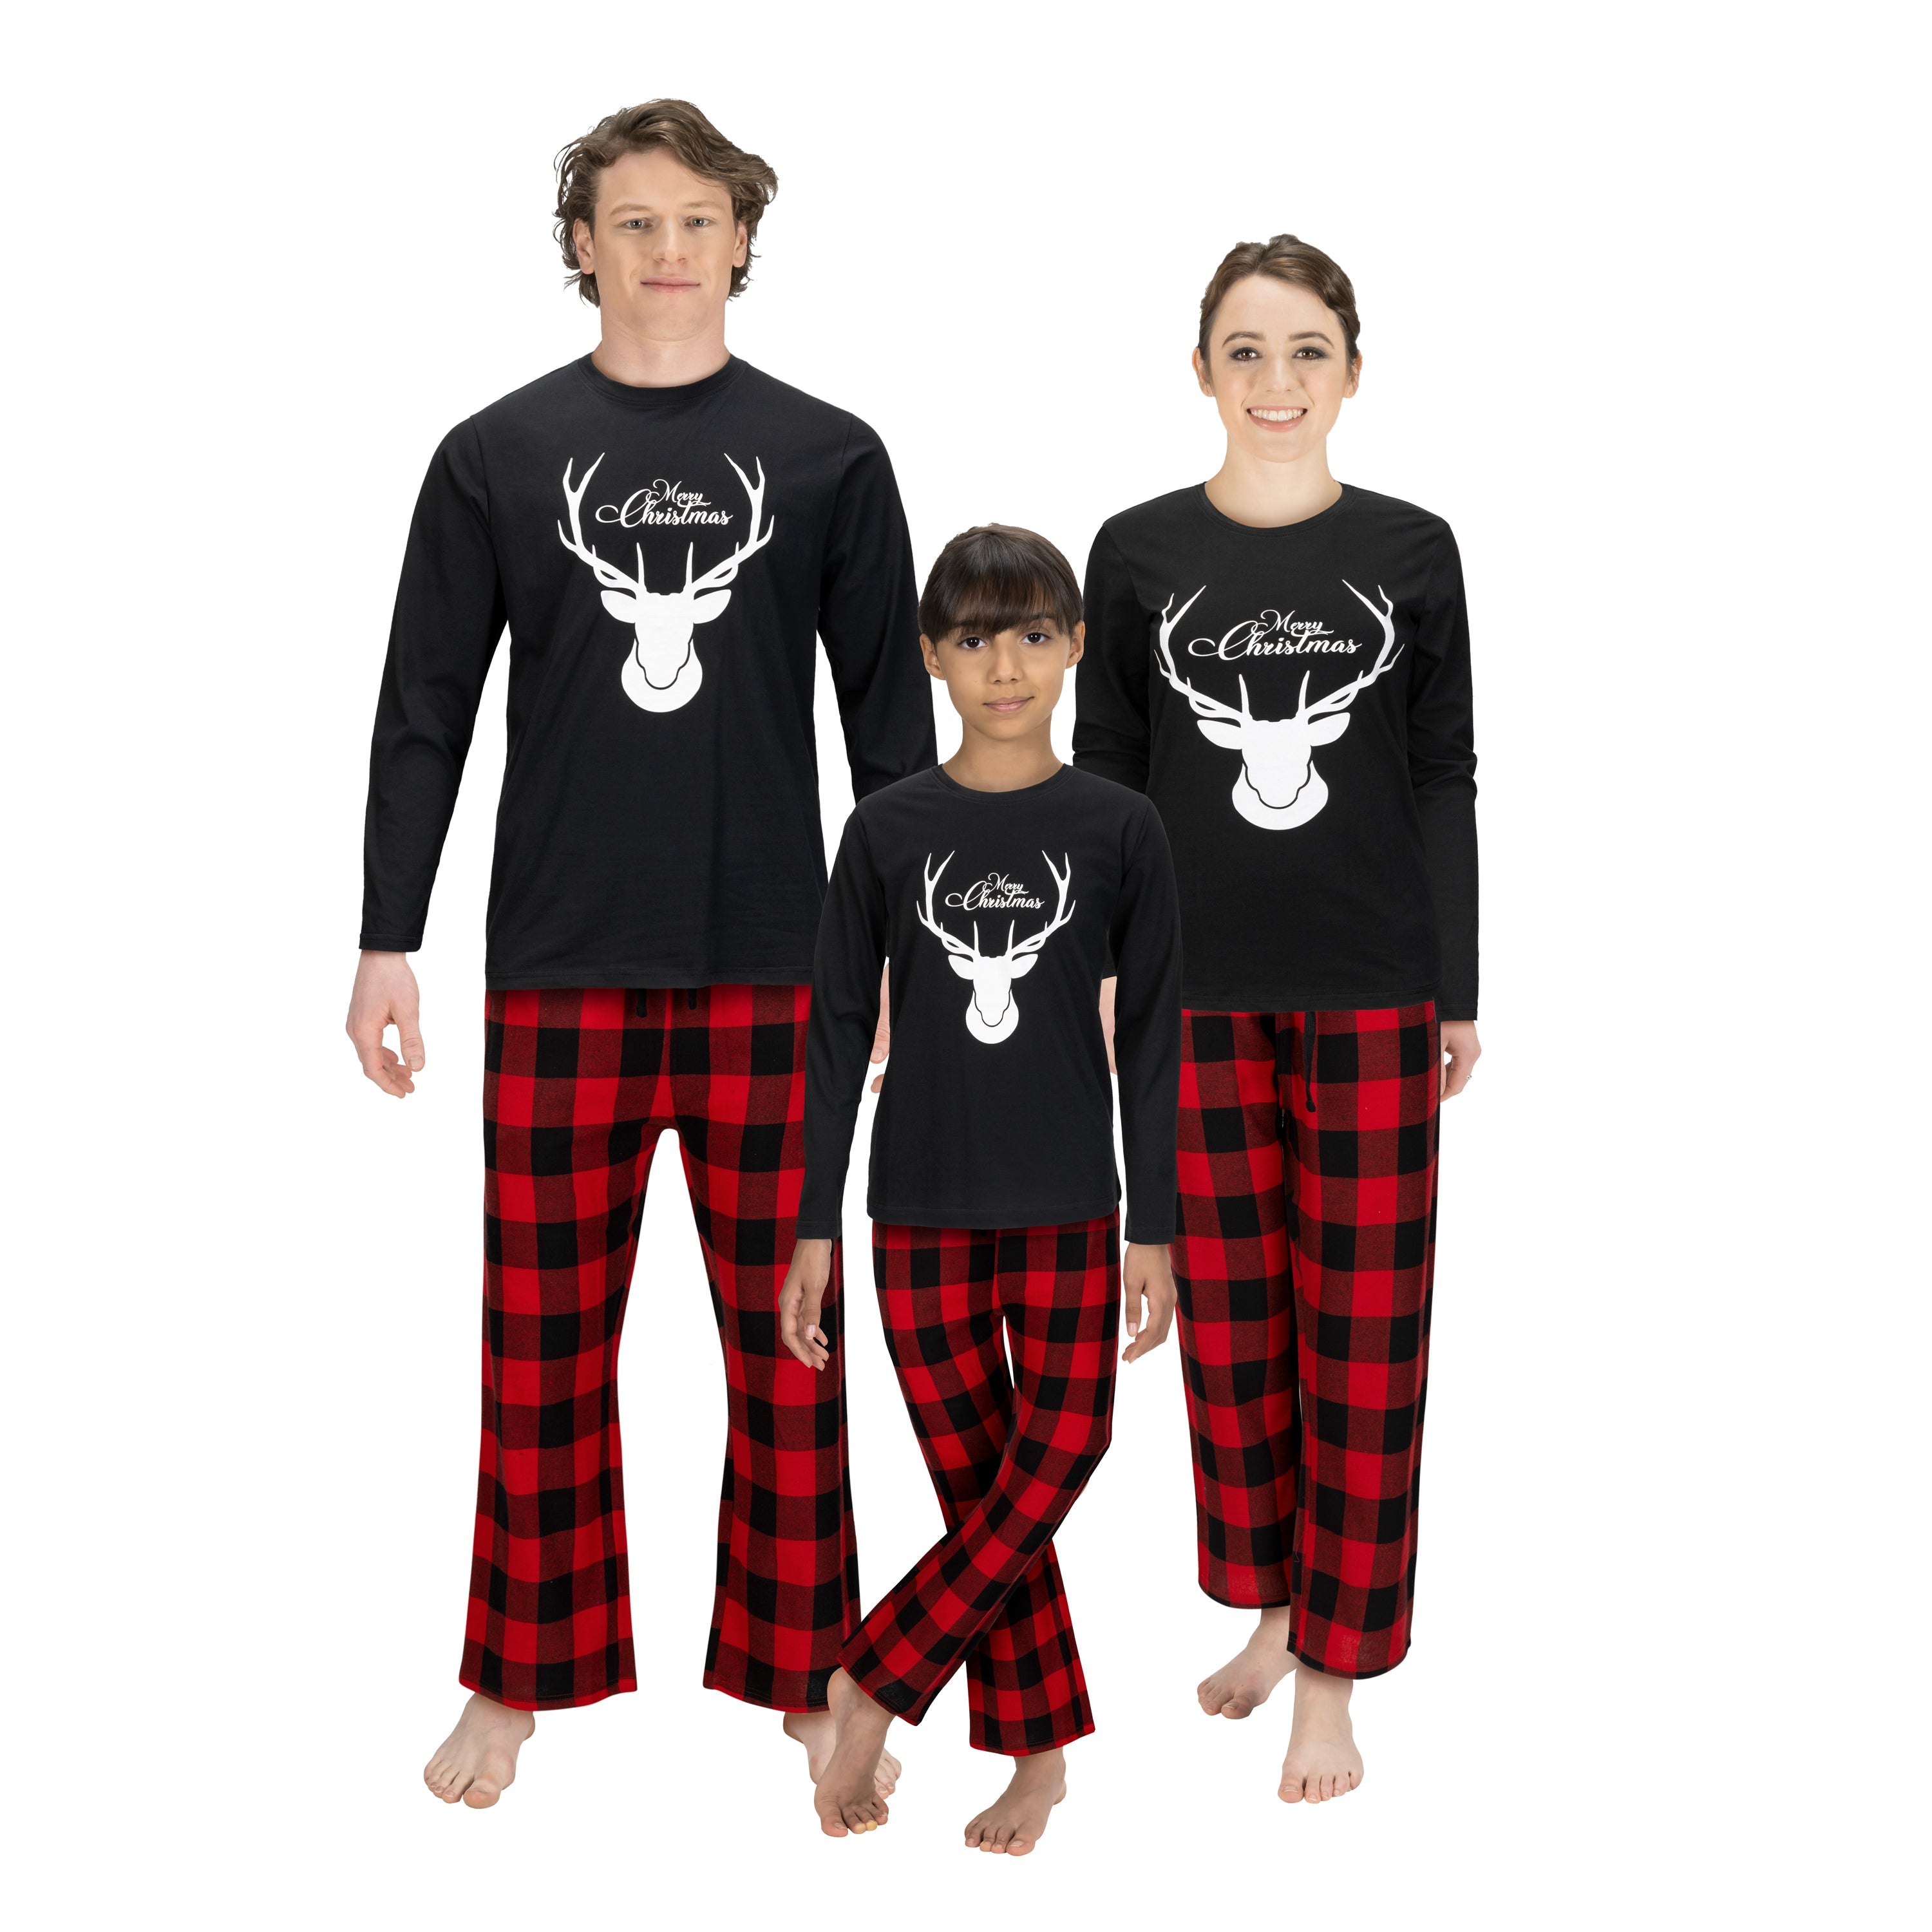 Christmas Family Matching Pajama Set for Kids Pjs Nightdress Deer Print Merry Christmas ELf Pyjama